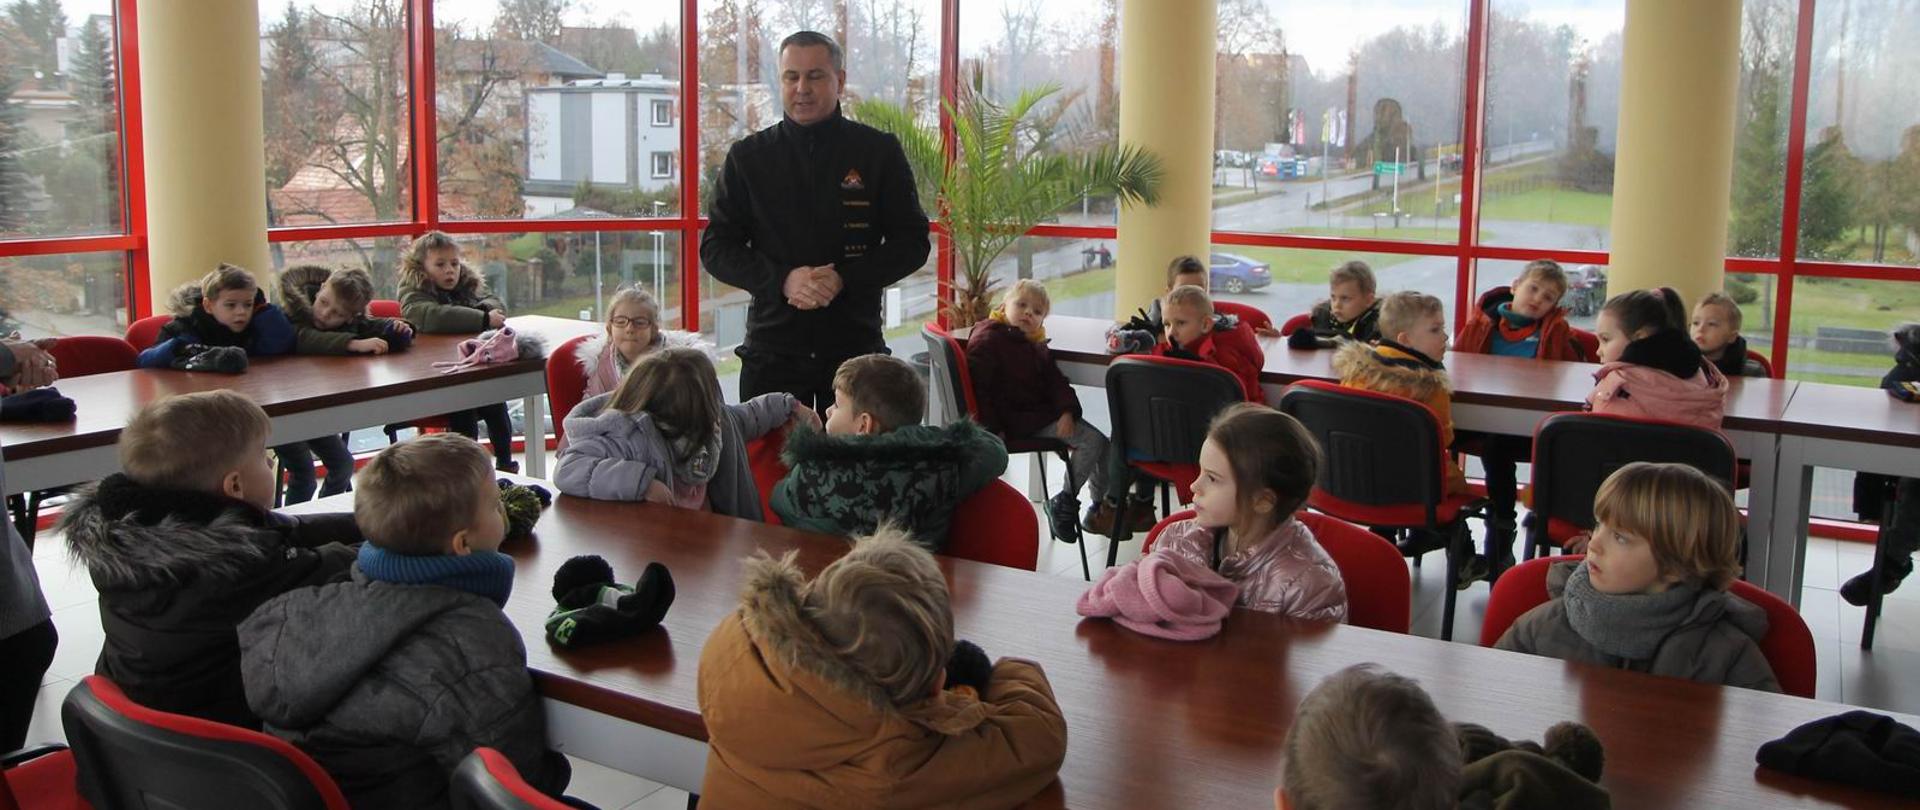 Spotkanie z dziećmi w ramach akcji "Otwarte strażnice" w KP PSP Chełmno.